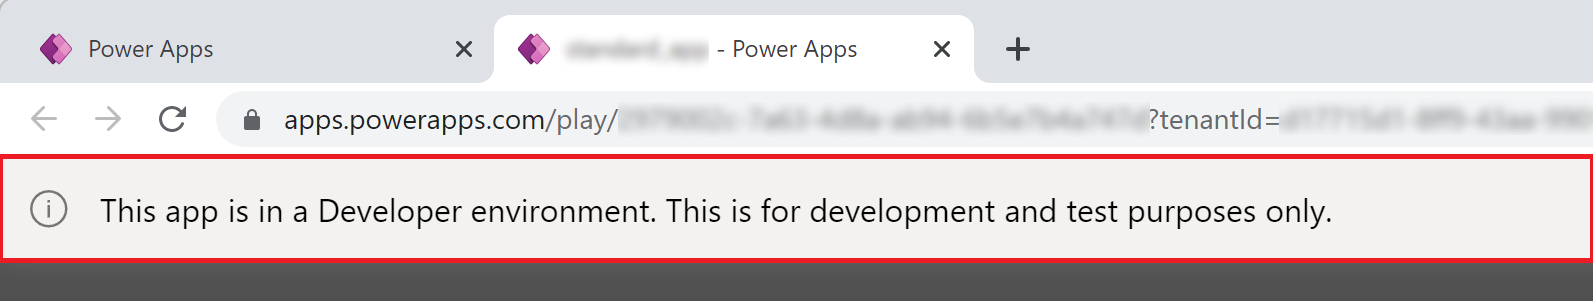 Power Apps Banner de aplicación de ambiente de desenvolvemento.